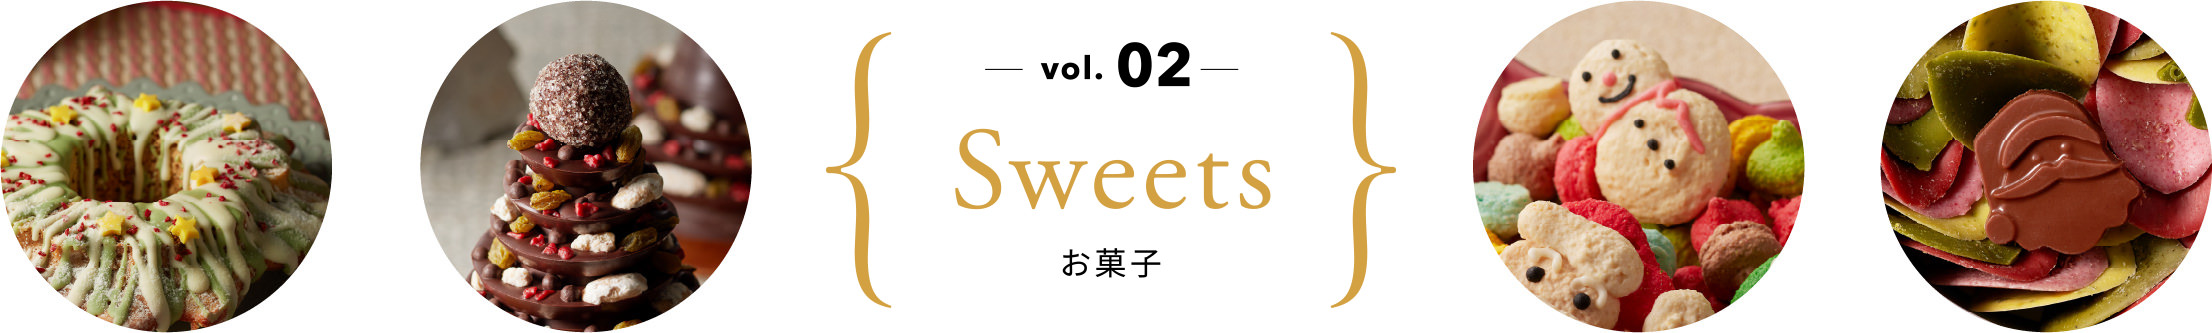 vol.02 お菓子